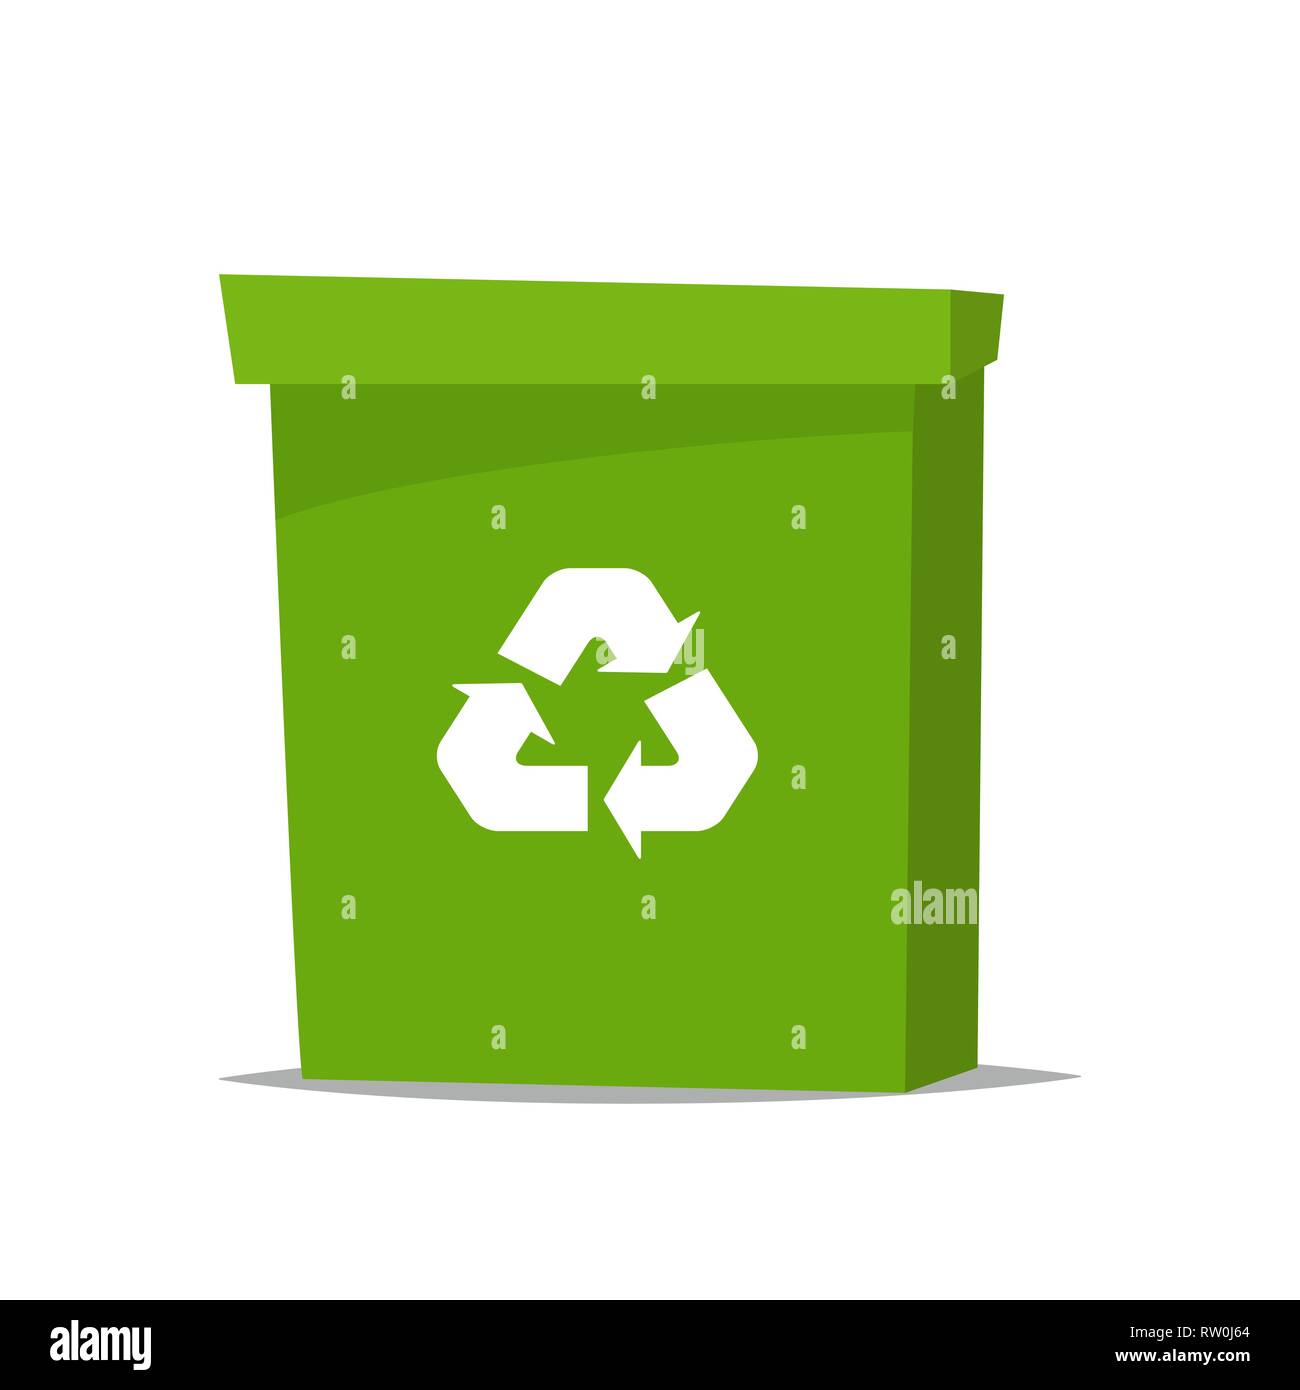 gran bote de basura de reciclaje verde con símbolo de reciclaje en él. cubo  de basura en estilo de dibujos animados. papelera de reciclaje. ilustración  vectorial 29329494 Vector en Vecteezy